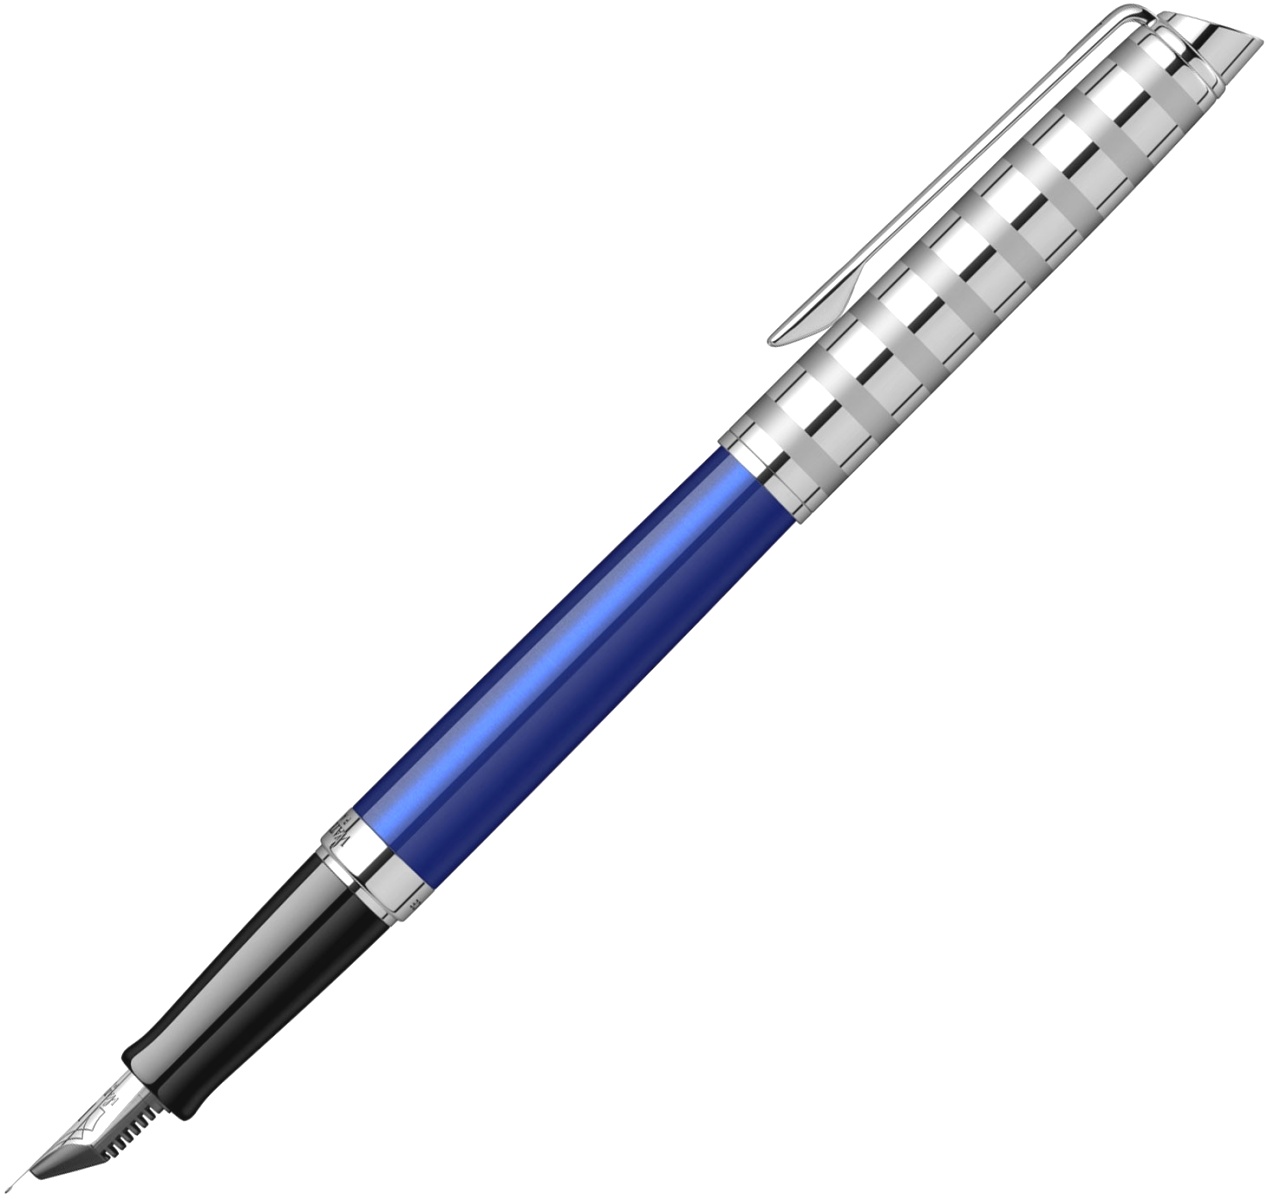  Ручка перьевая Waterman Hemisphere Deluxe 2020, Marine Blue CT (Перо F), фото 2